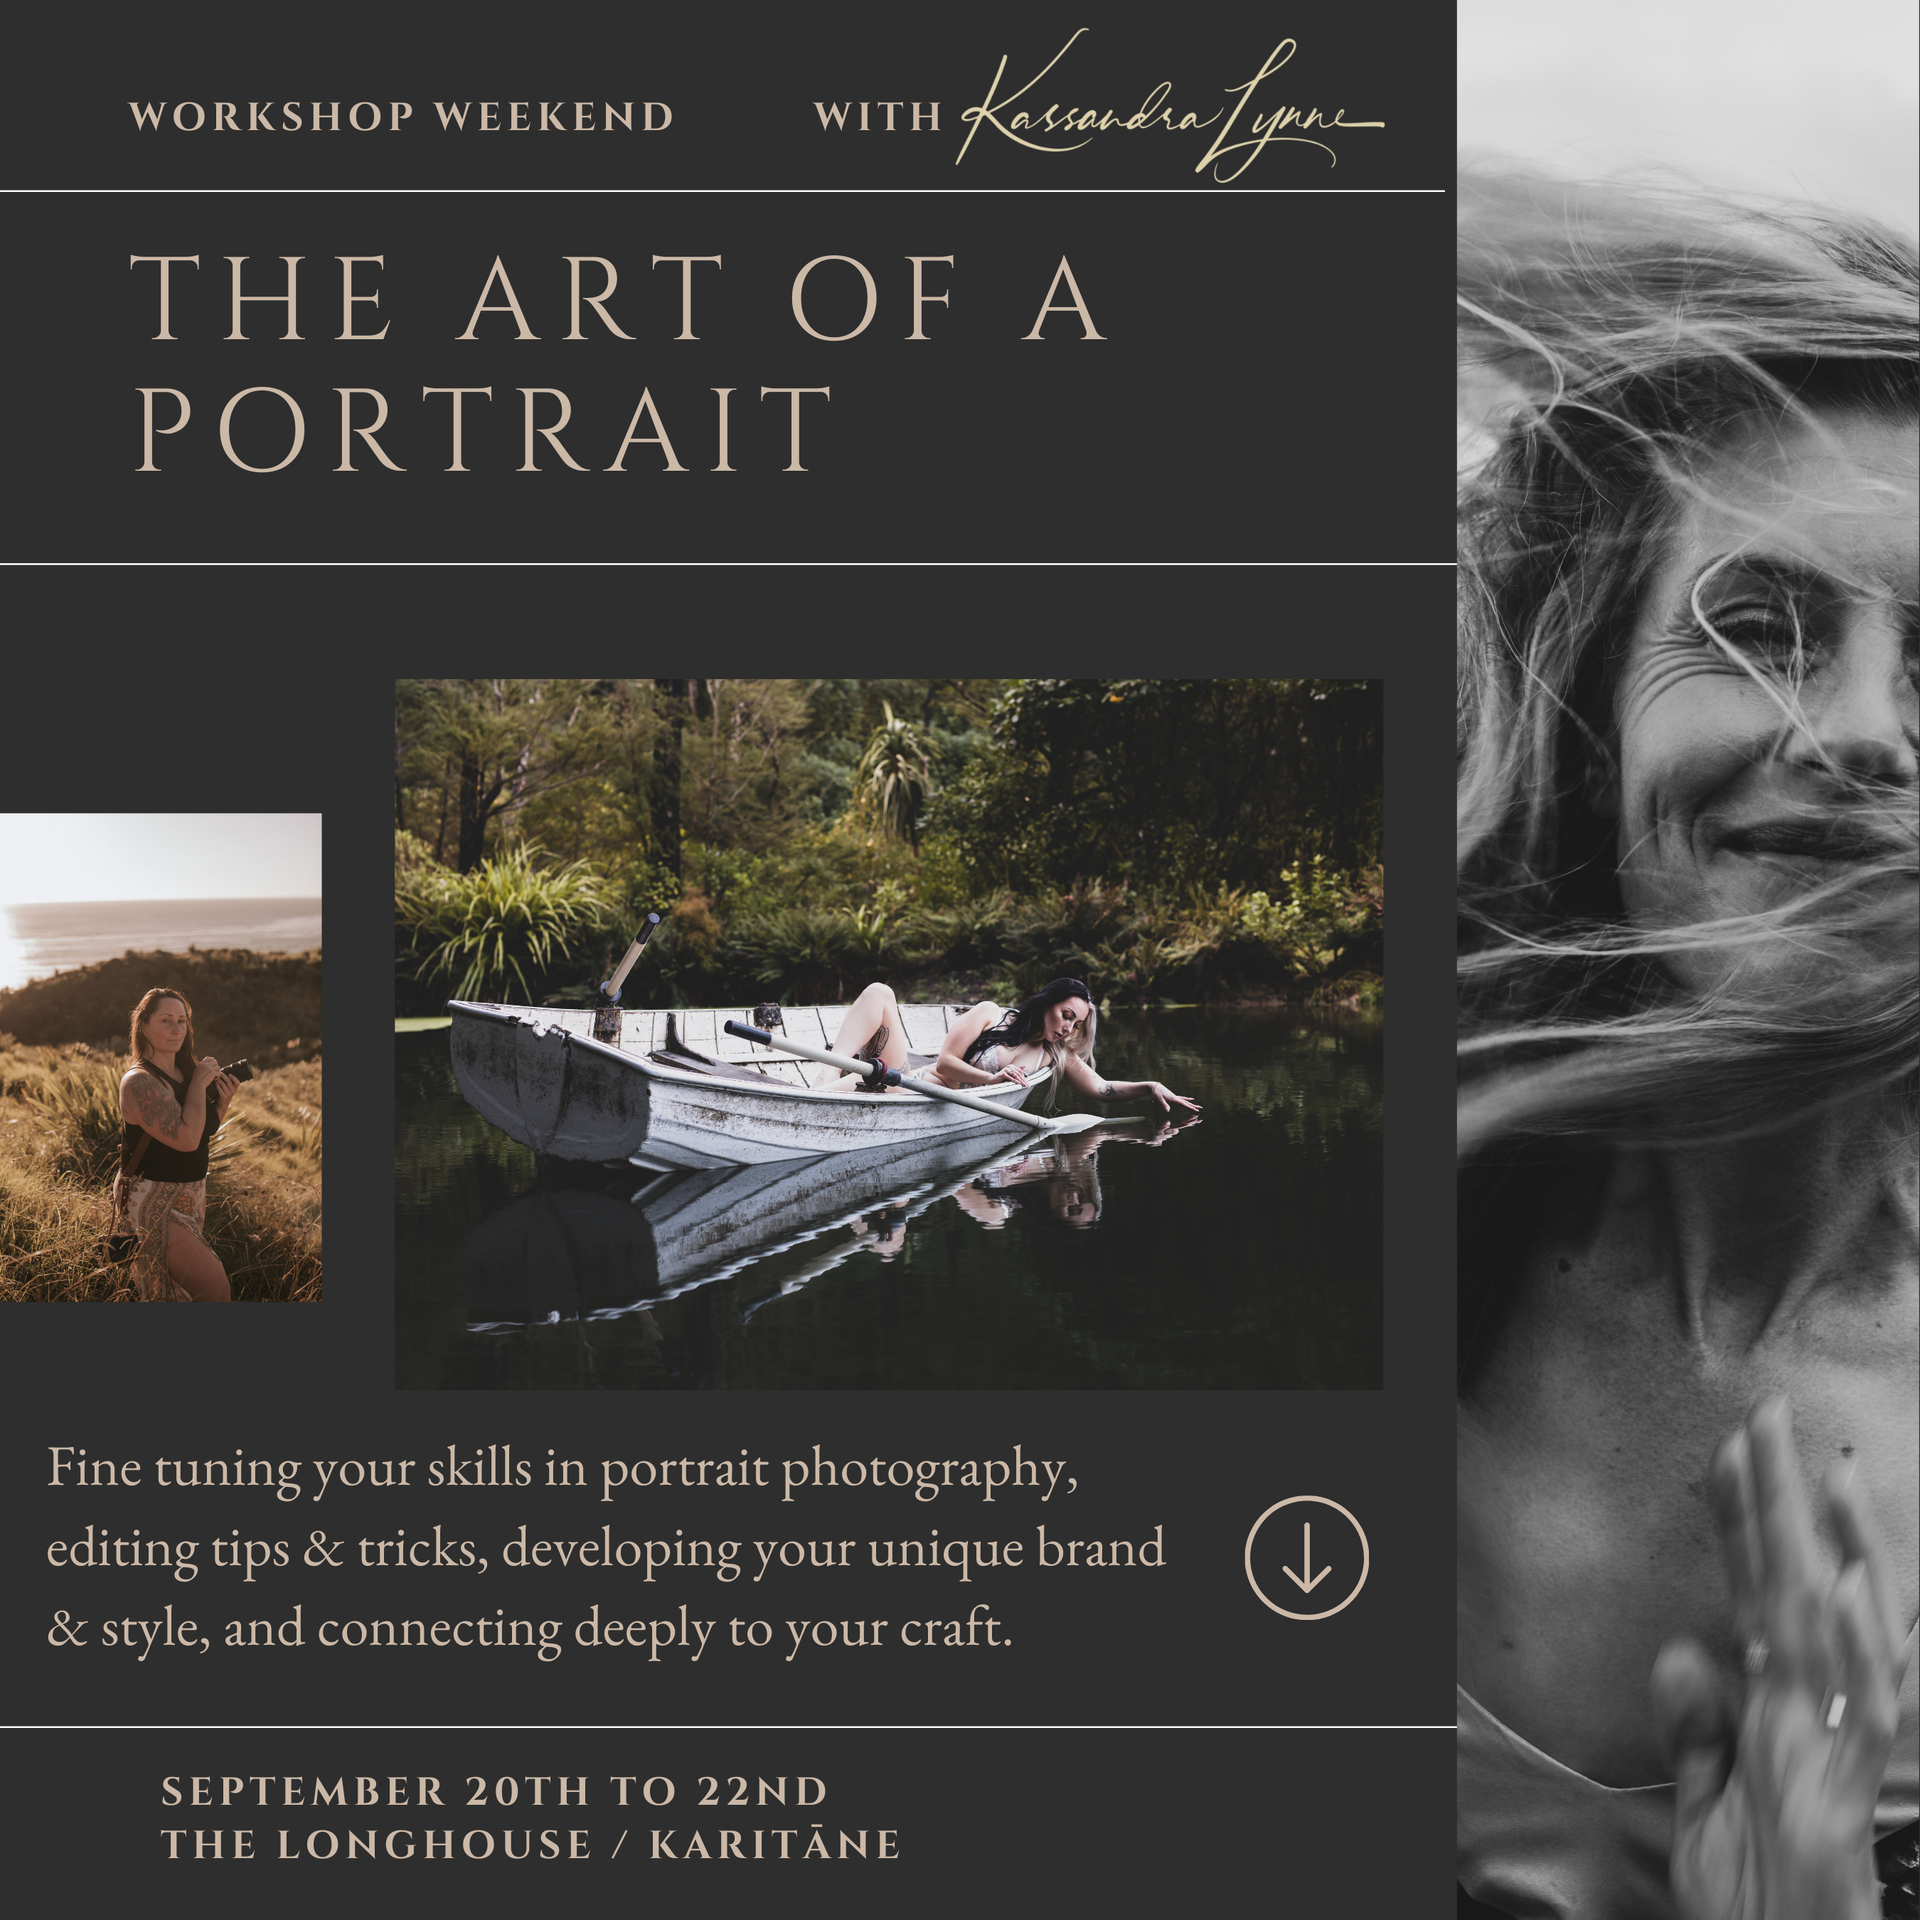 The Art of a Portrait: Workshop Weekend with Kassandra Lynne